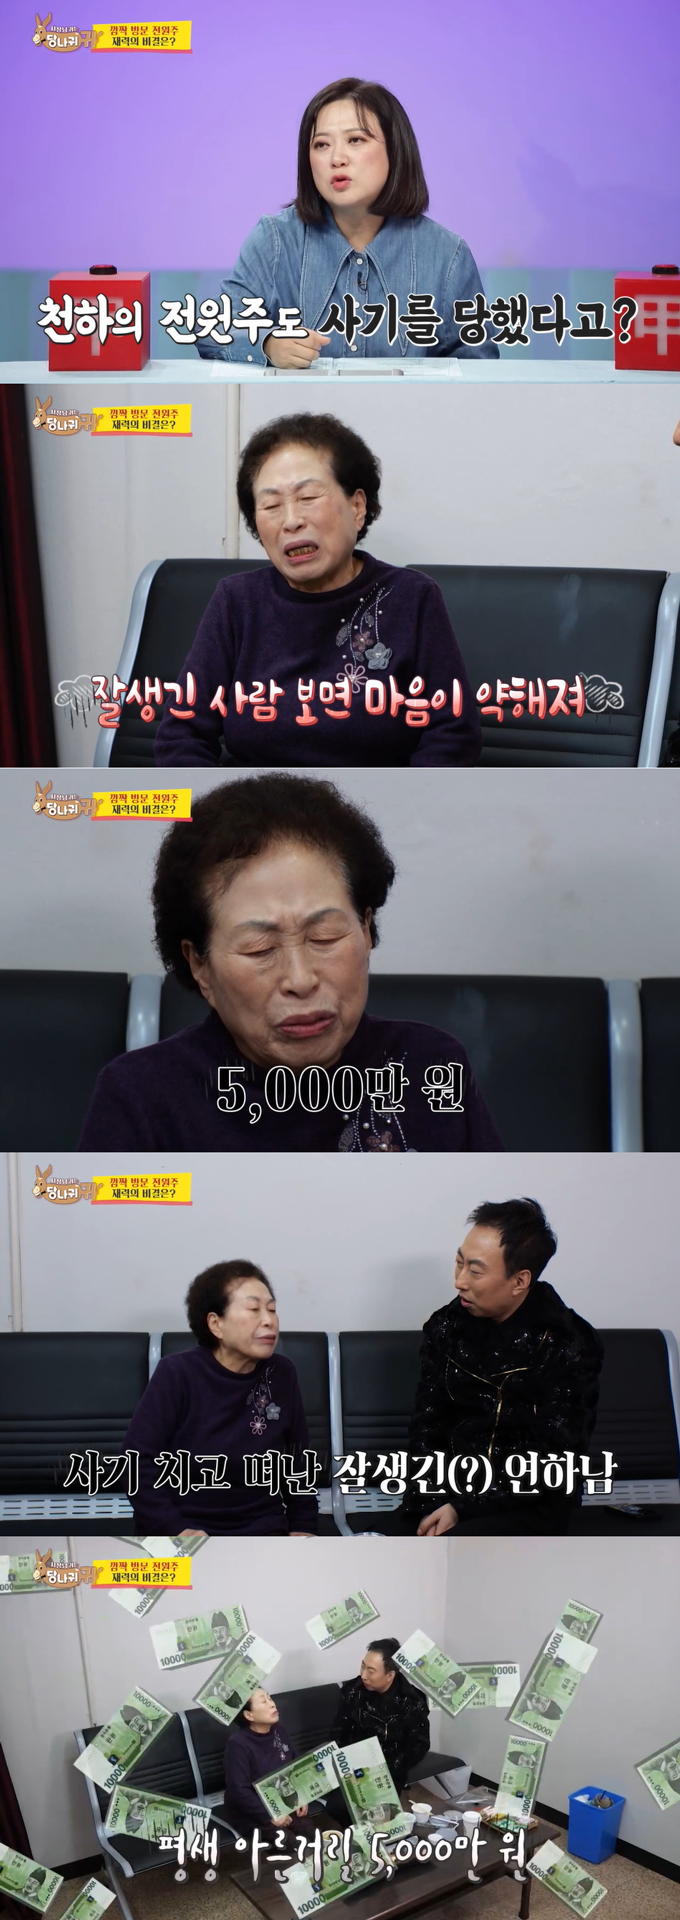 배우 전원주가 과거 사기 피해 경험담을 털어놨다./사진=KBS2 '사장님 귀는 당나귀 귀' 방송 화면